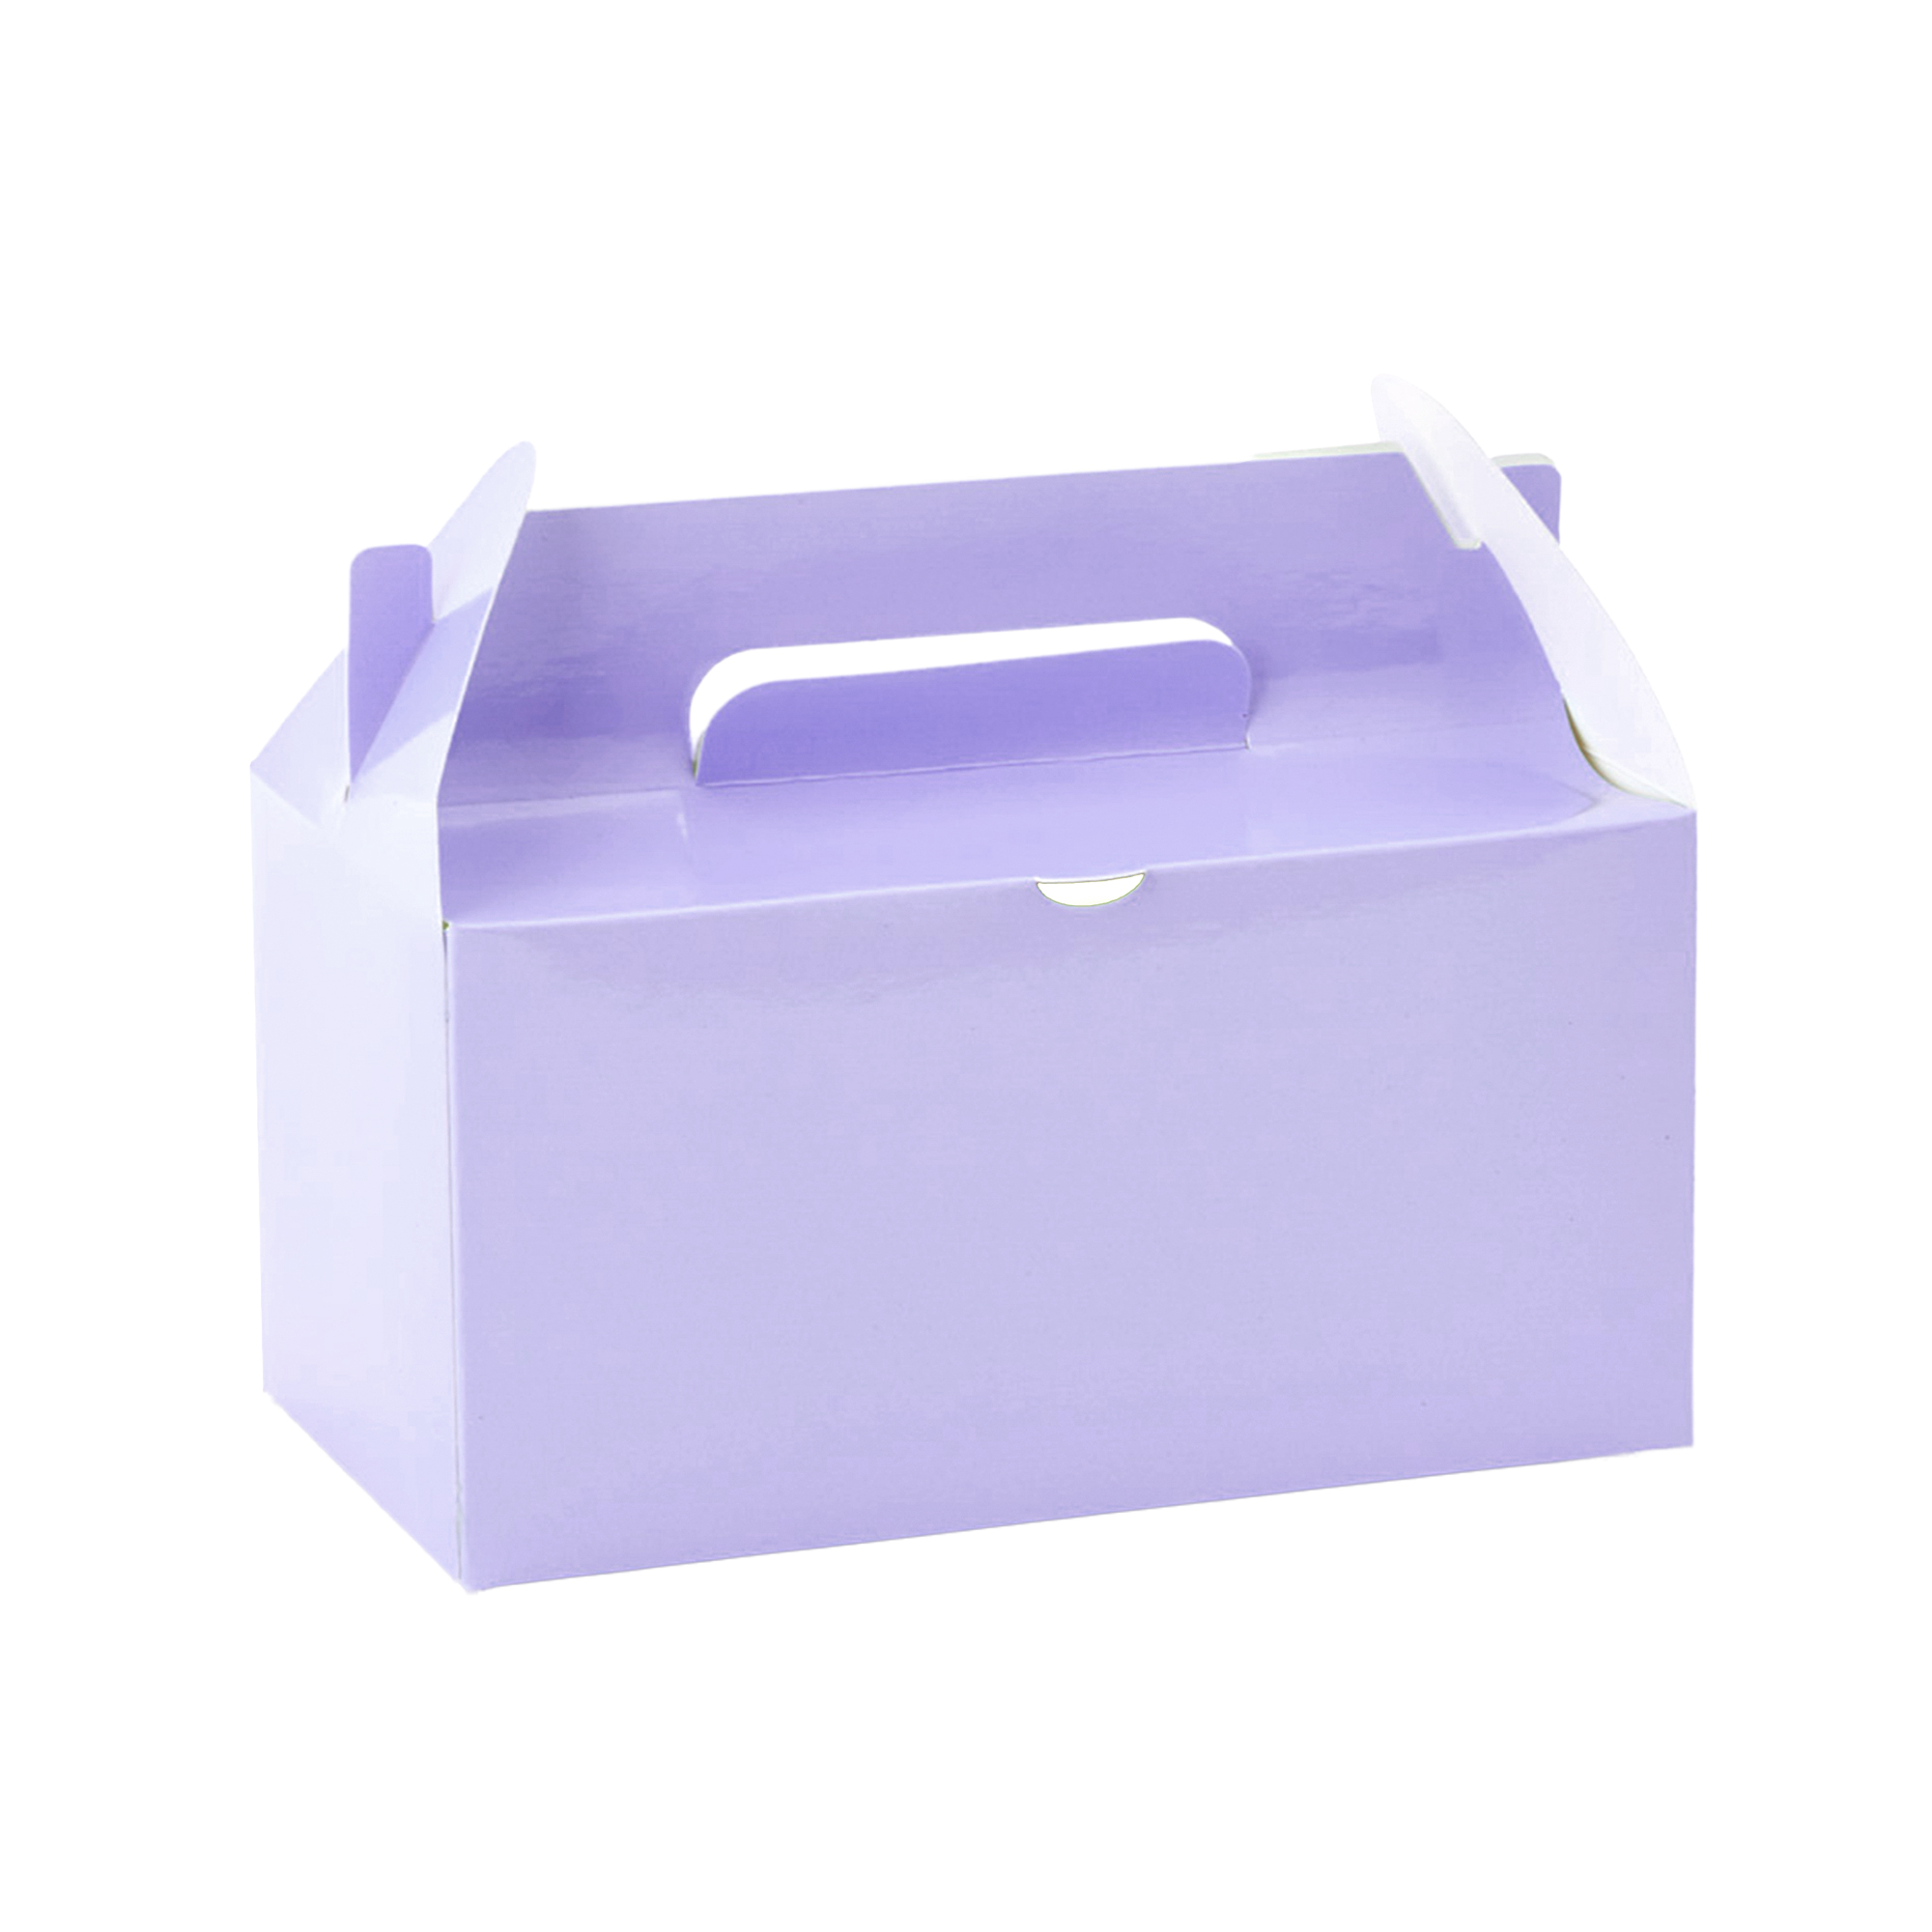 Takeout Box 12pcs/bag - Lavender